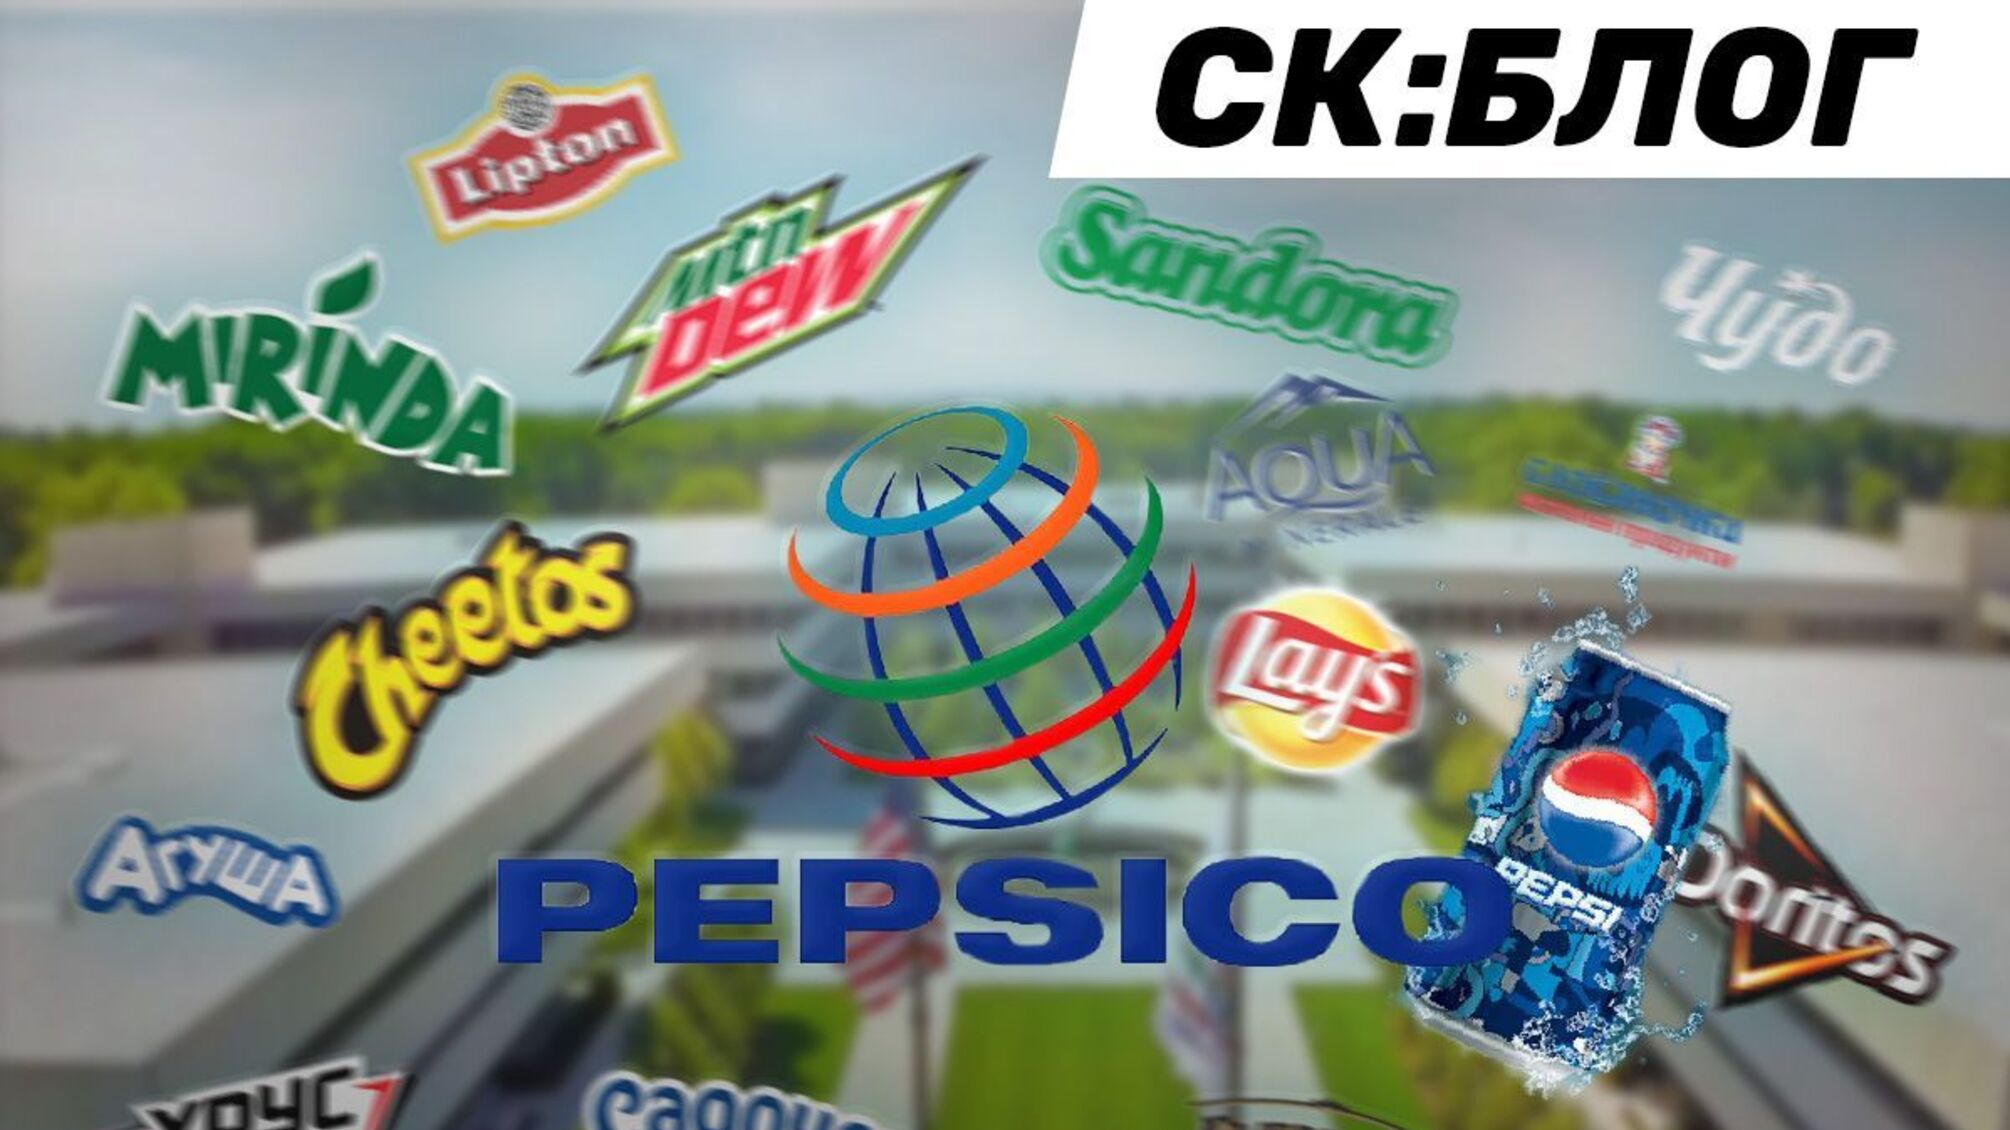 Компанія PepsiCo втрапила у скандал через свідоме замовчування російської агресії?